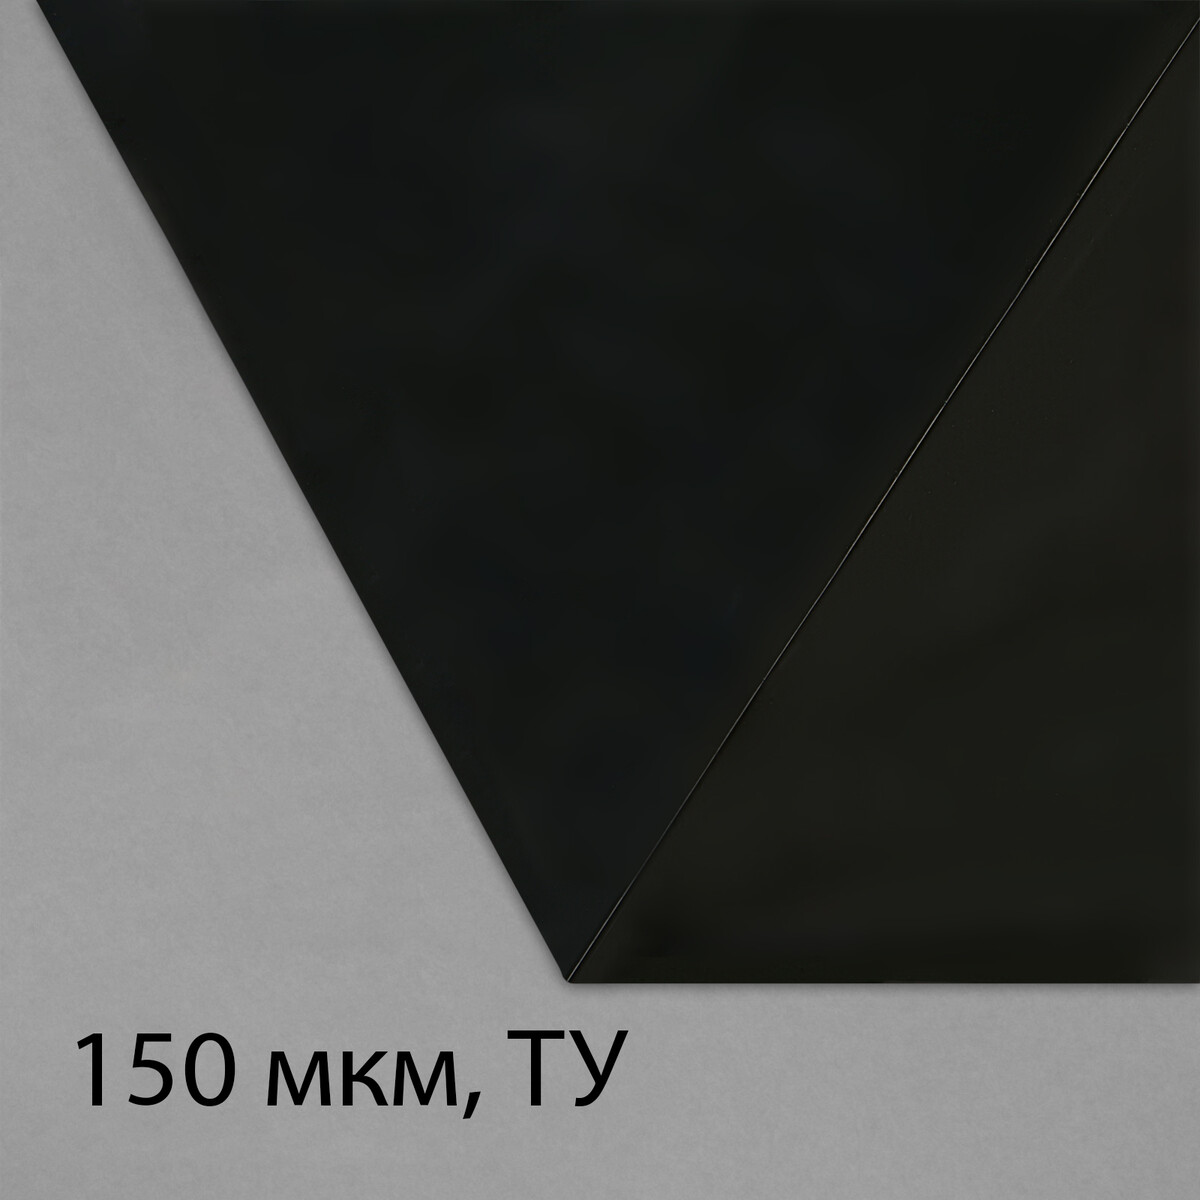 Пленка из полиэтилена, техническая, толщина 150 мкм, черная, 5 × 3 м, рукав (1.5 м × 2), эконом 50%, для дома и сада пленка полиэтиленовая техническая толщина 120 мкм 5 × 3 м рукав 1 5 м × 2 черная 2 сорт эконом 50 %